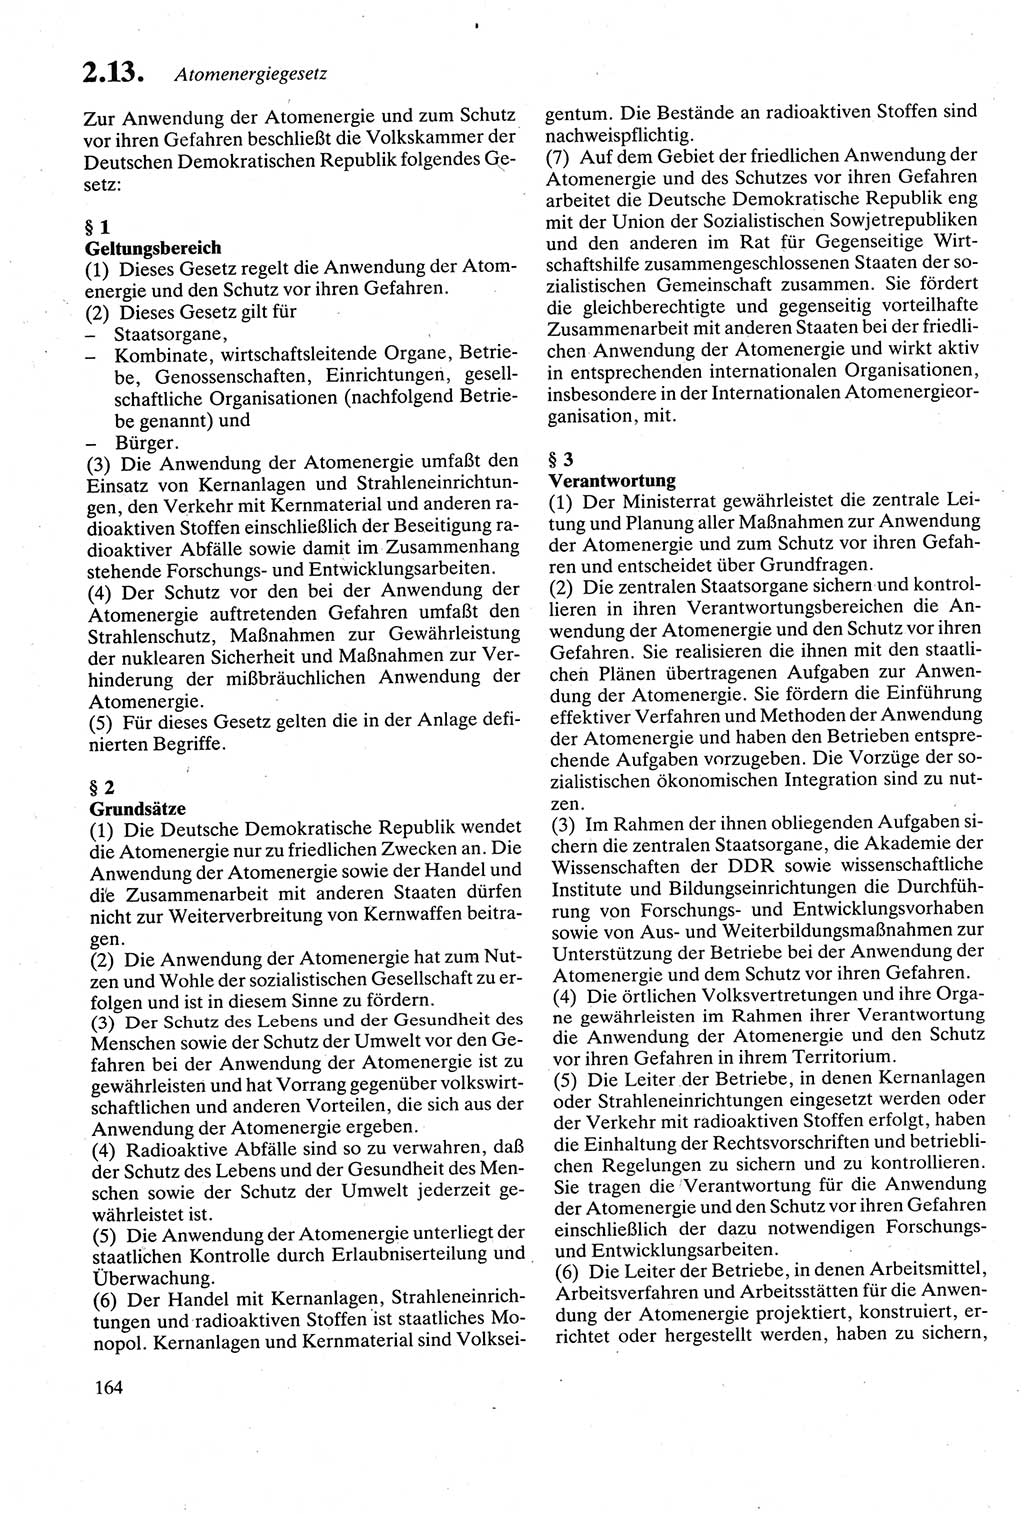 Strafgesetzbuch (StGB) der Deutschen Demokratischen Republik (DDR) sowie angrenzende Gesetze und Bestimmungen 1979, Seite 164 (StGB DDR Ges. Best. 1979, S. 164)